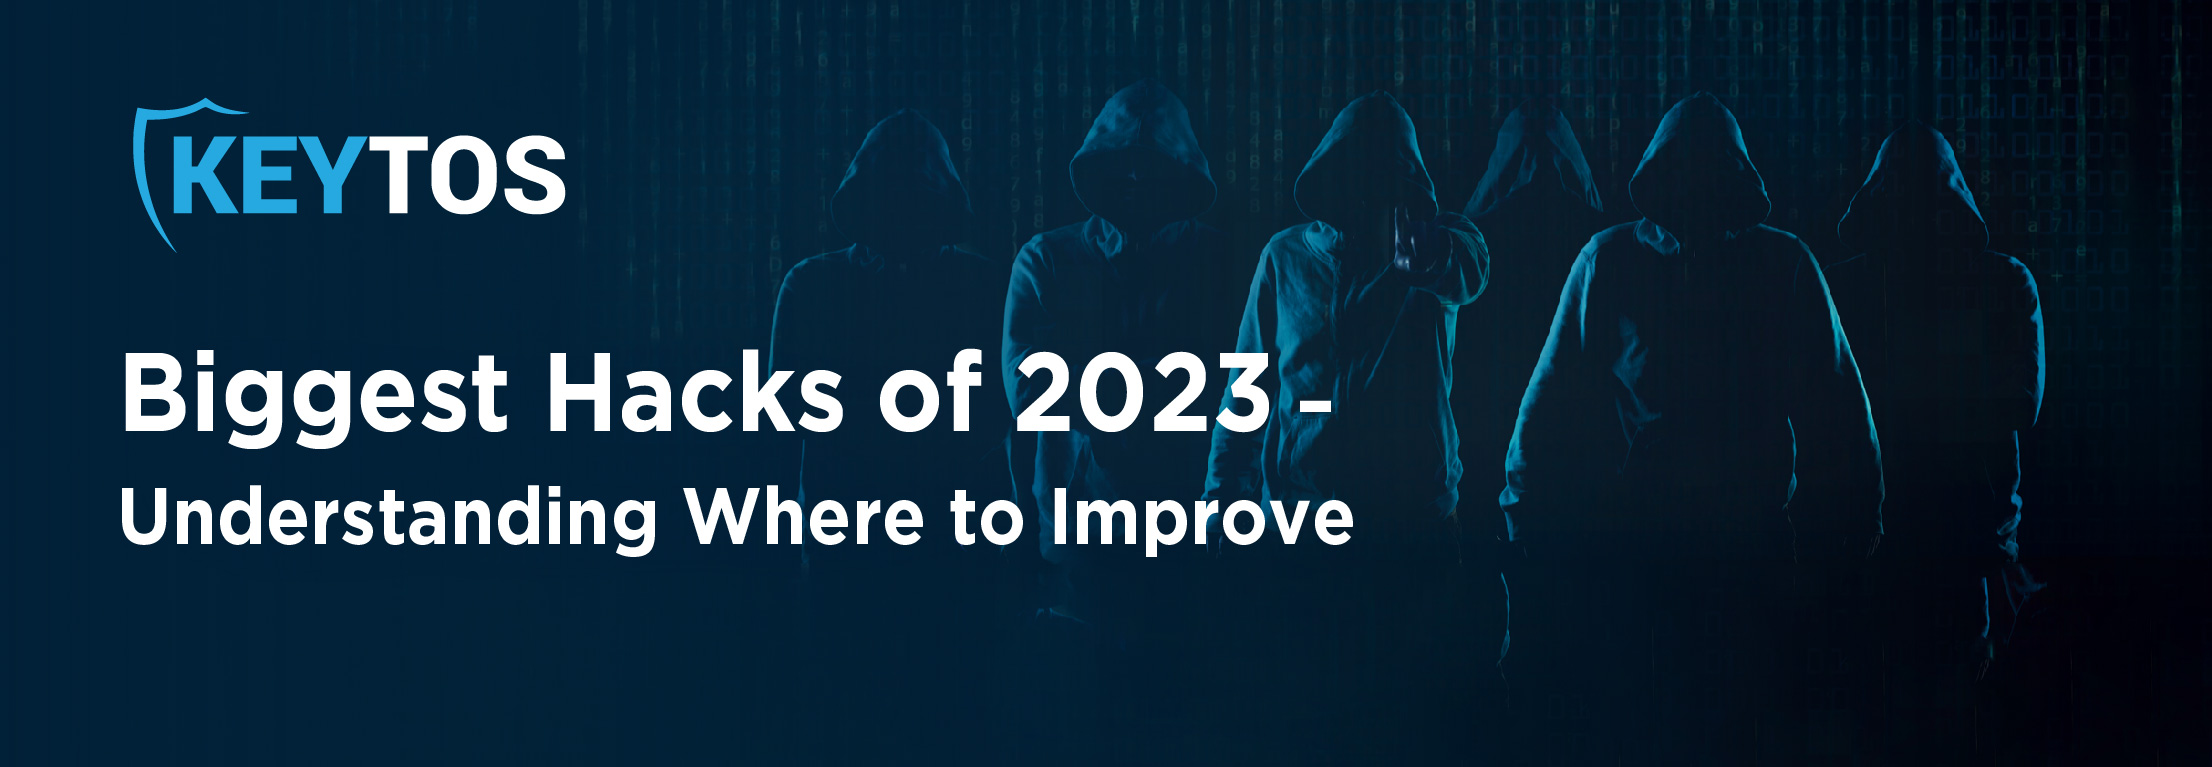 Conclusiones de los mayores ataques de ciberseguridad de 2023.